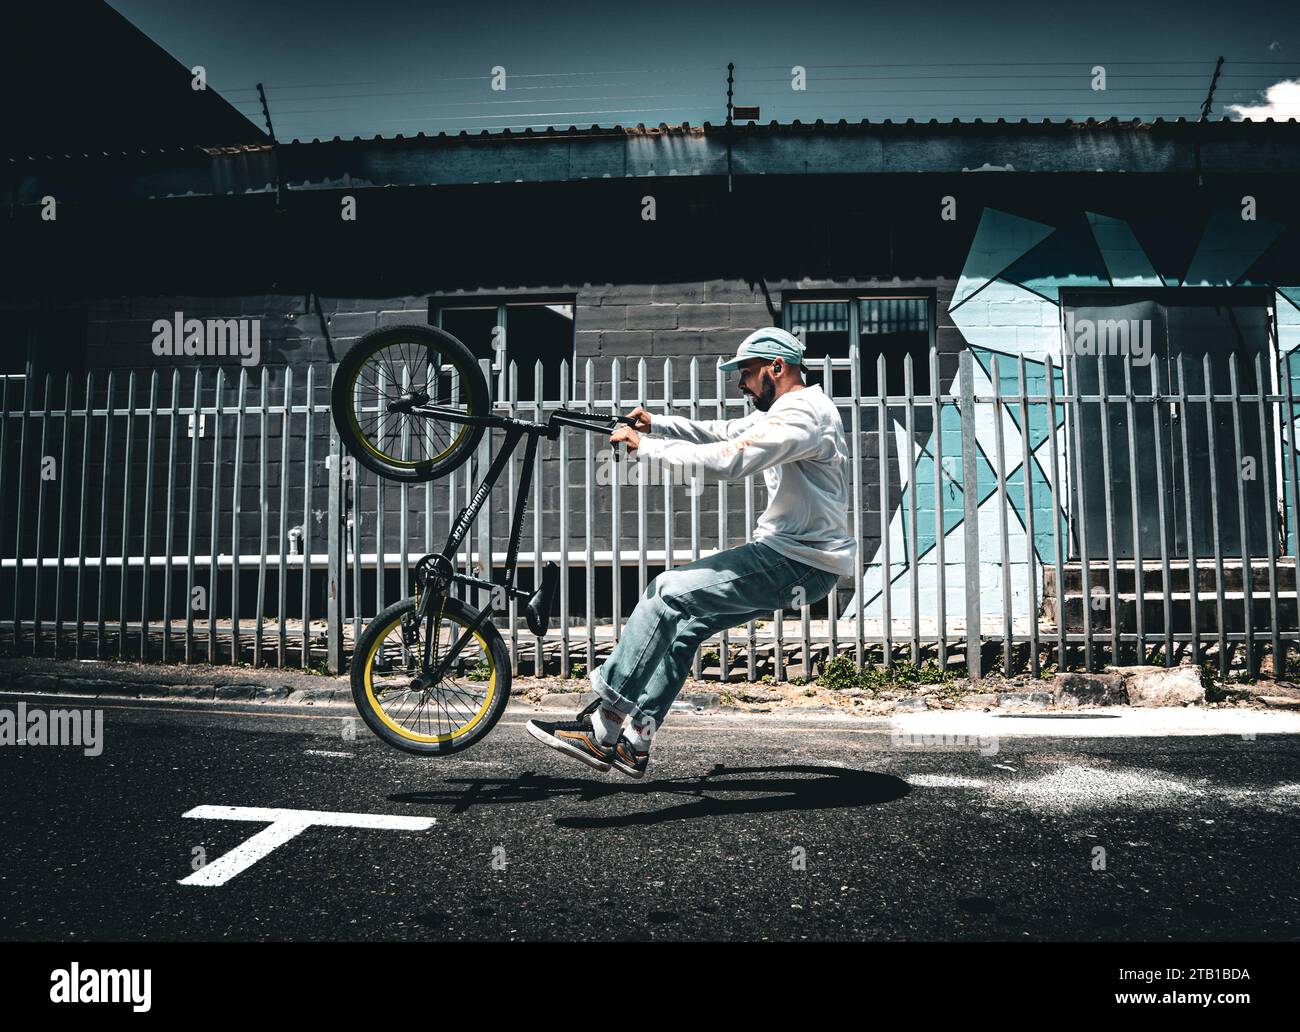 Action Sport : un Rider BMX pleine longueur en mouvement Banque D'Images